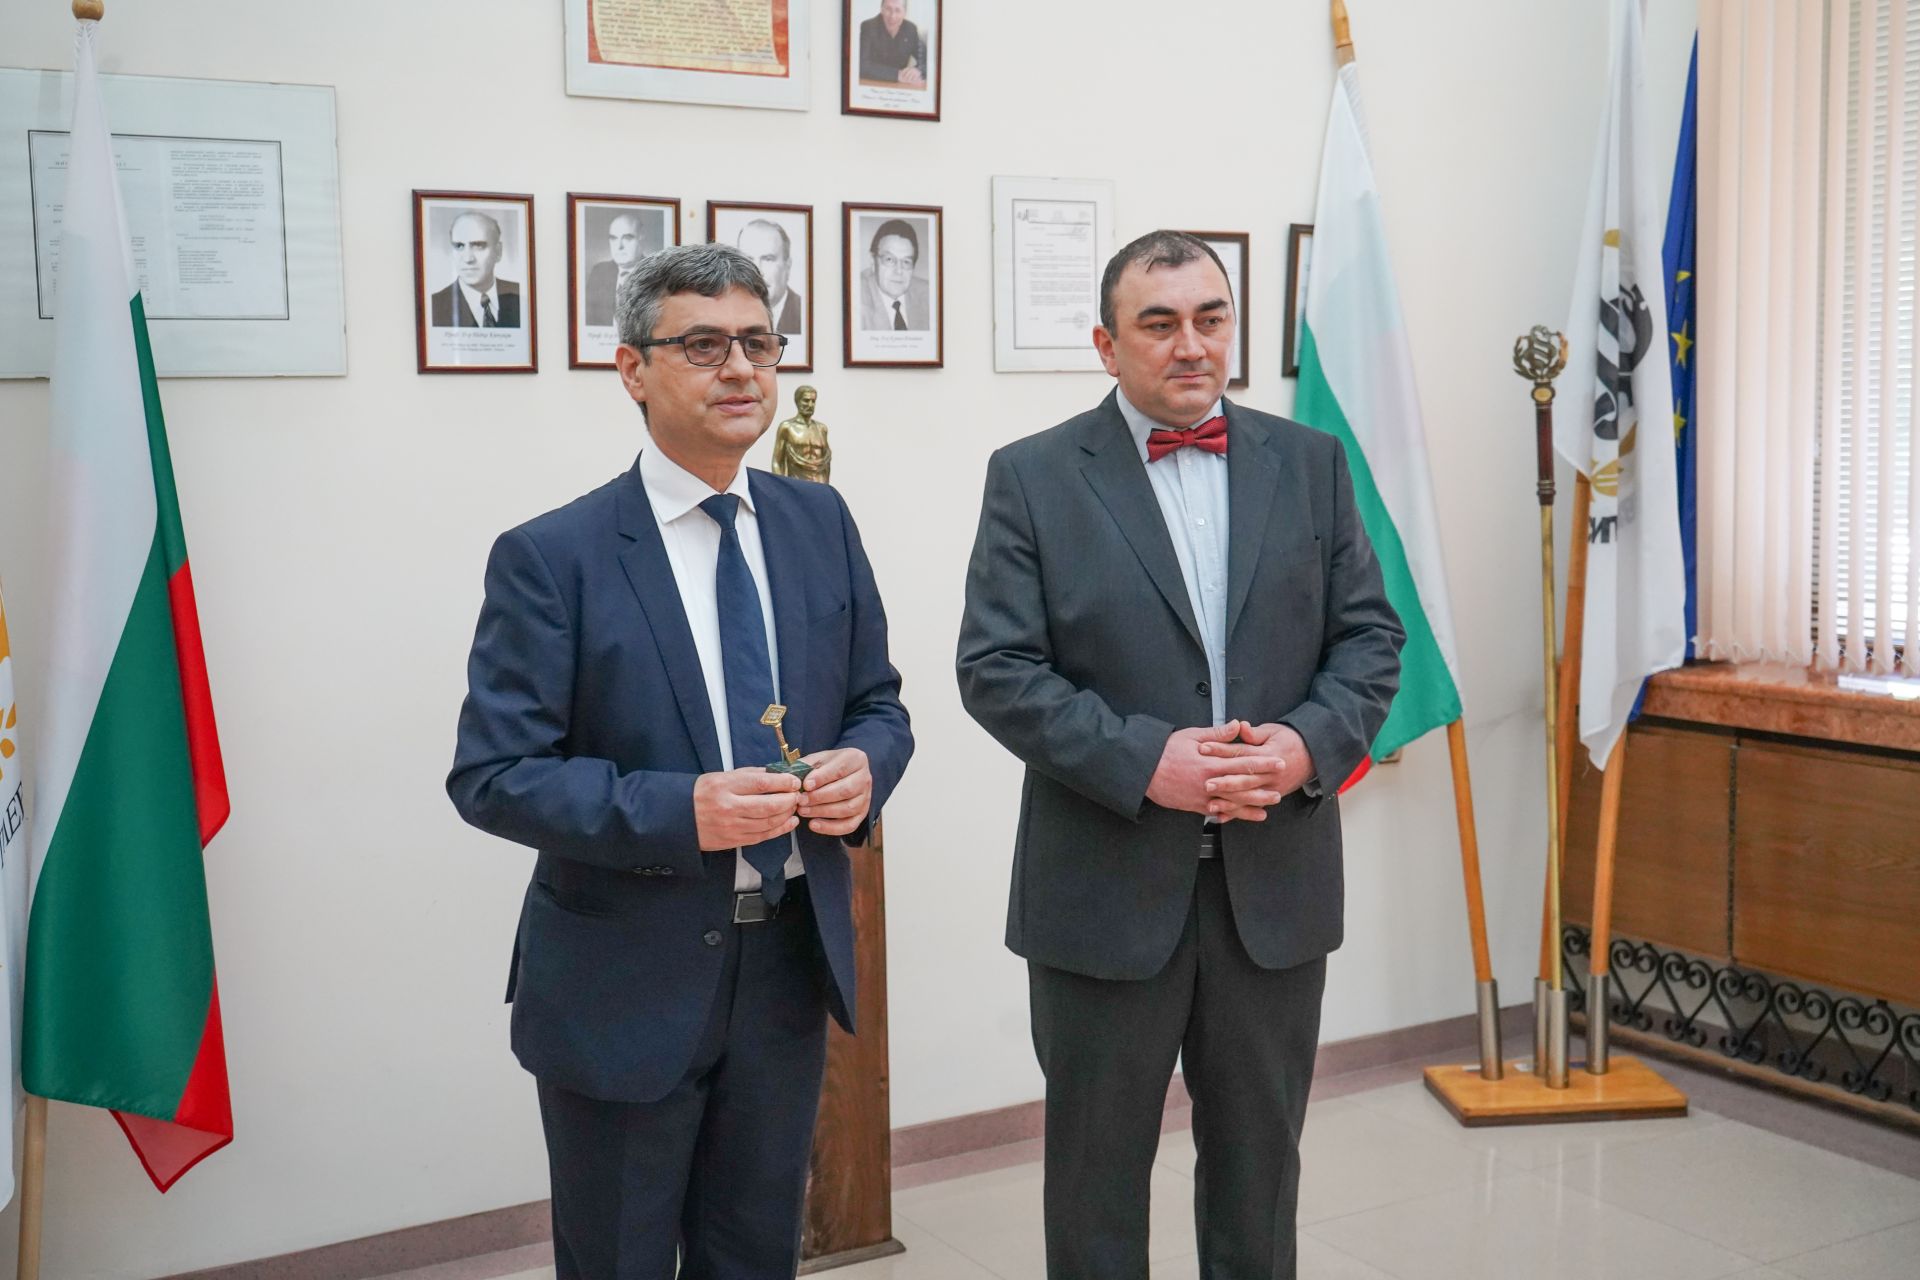 Професор Славчо Томов (вляво) връчи на новия ректор проф. д-р Добромир Димитров символично ключа на висшето училище